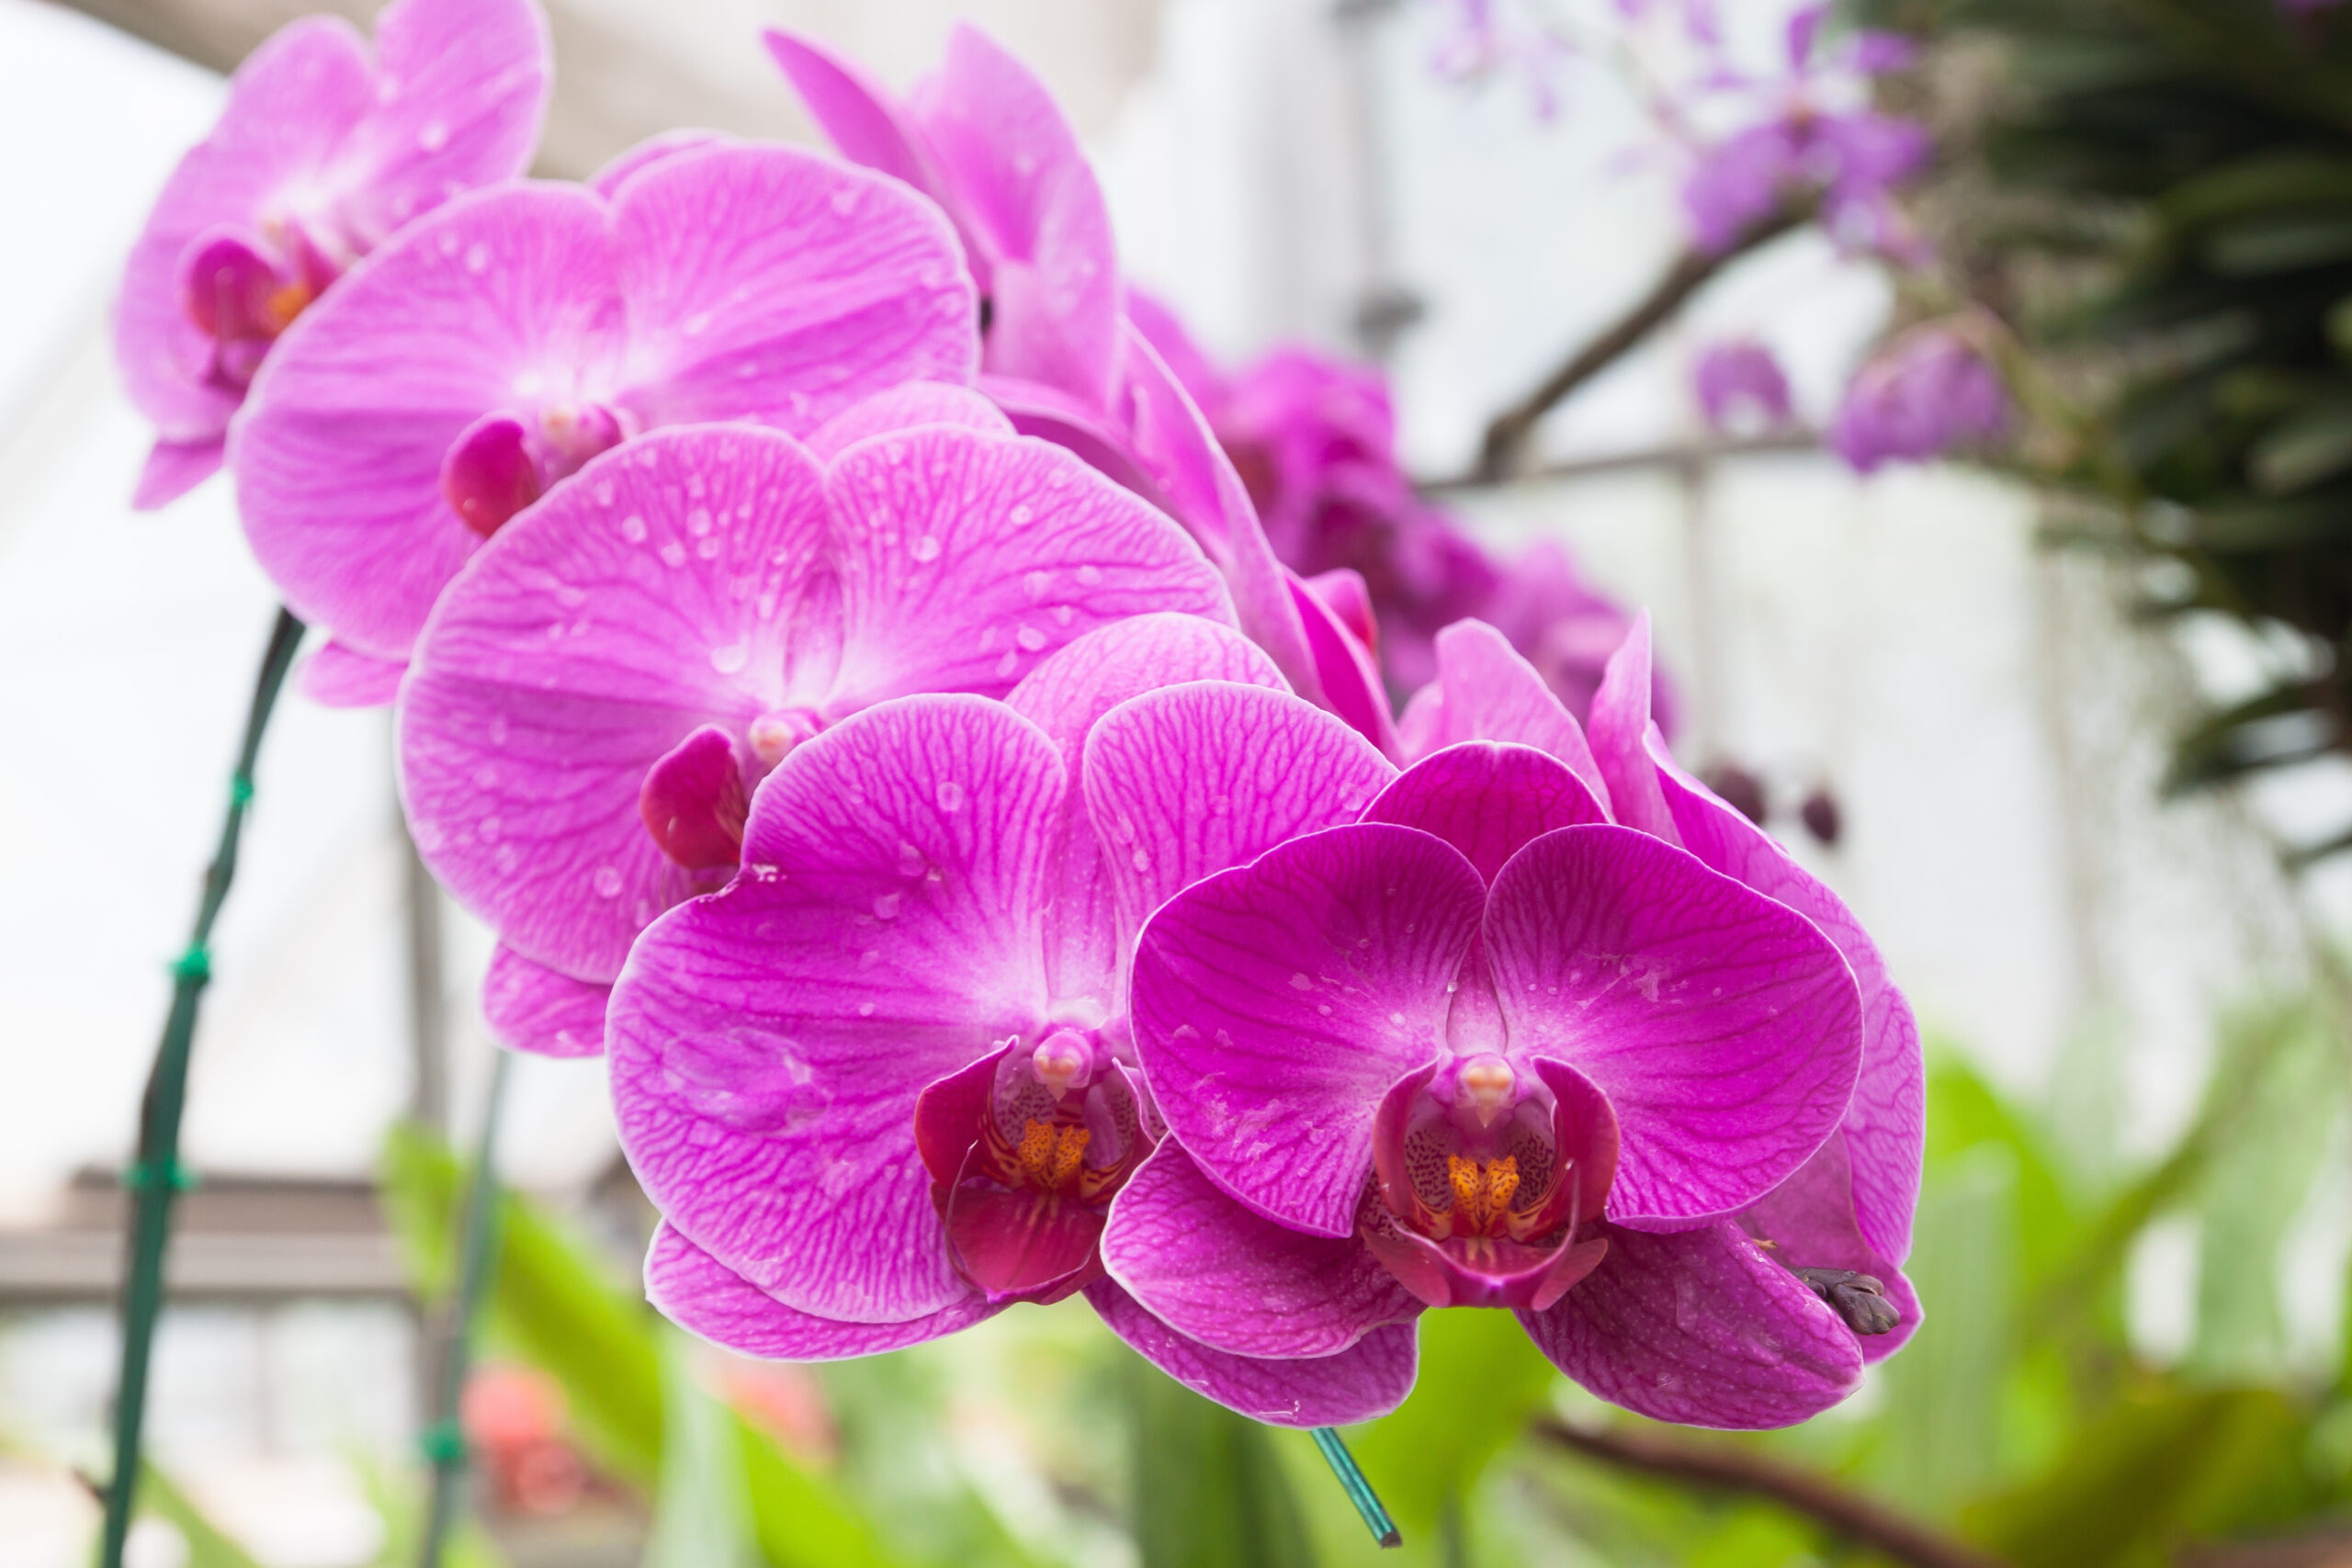 Uma orquídea Vanda, florida com flores da cor lilás.